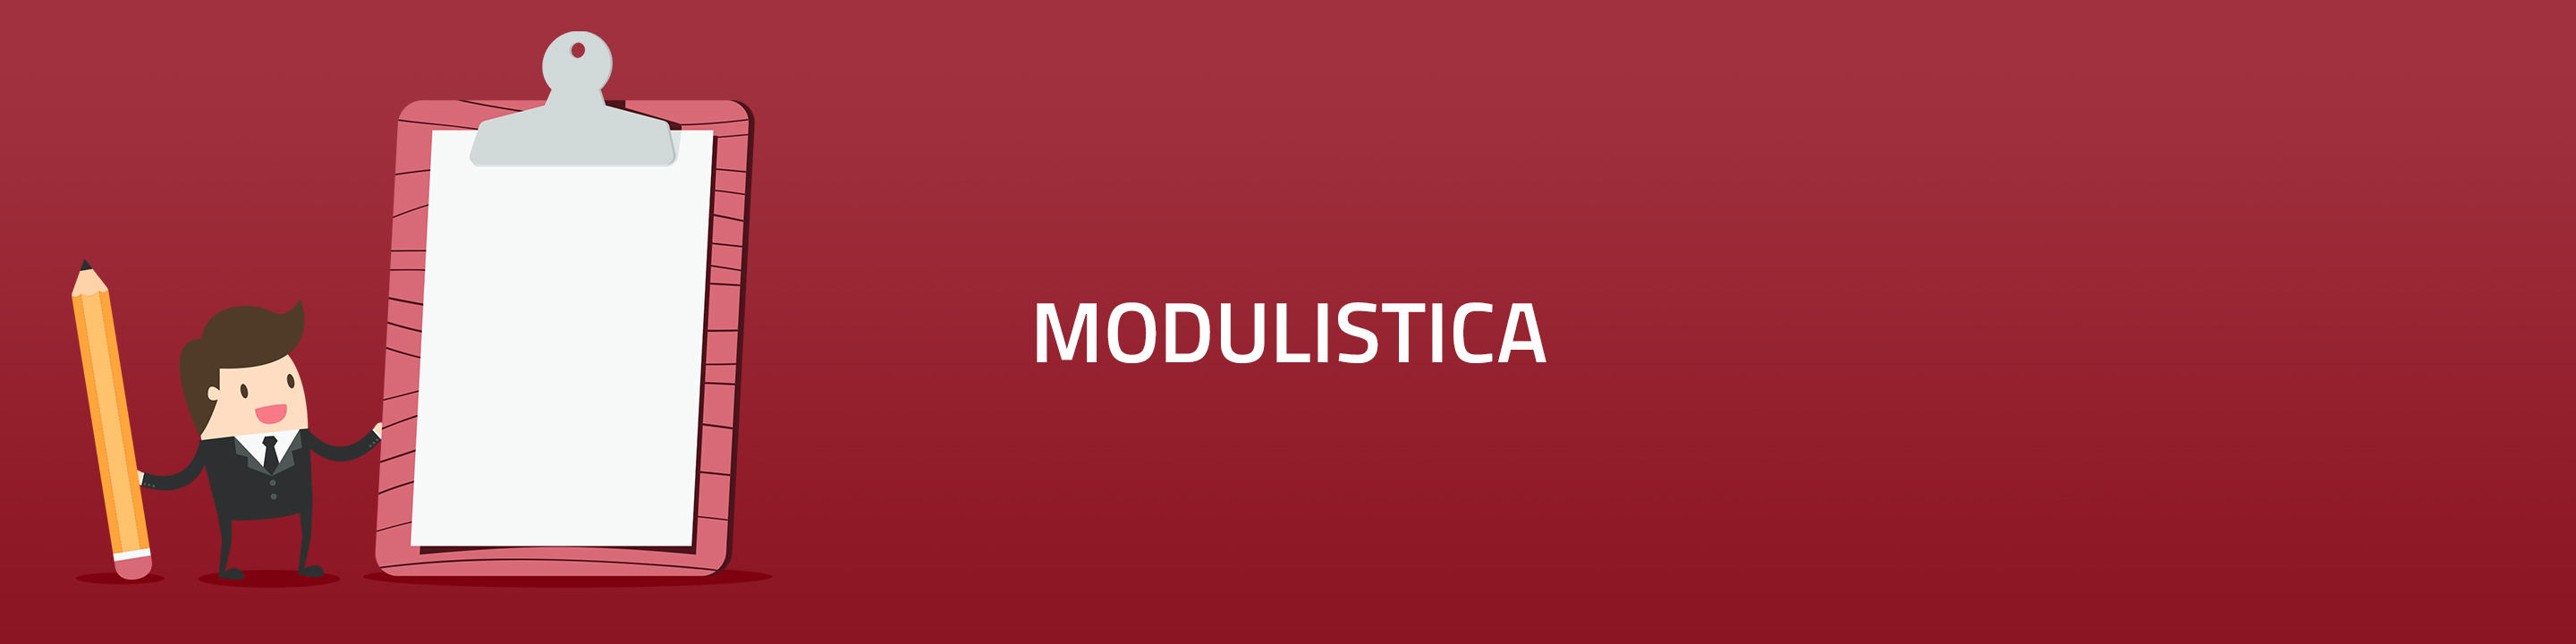 banner-modulistica